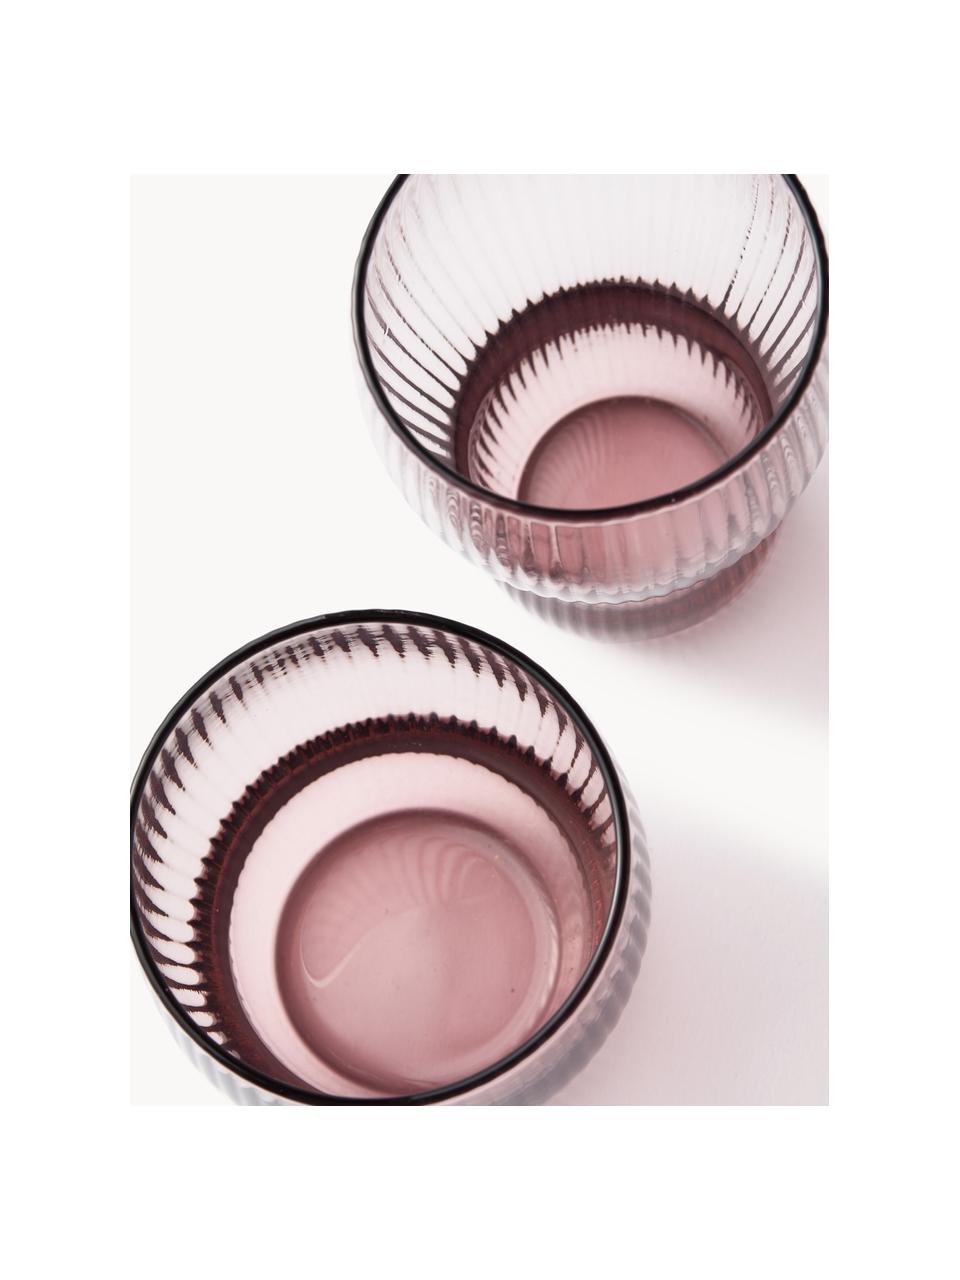 Mundgeblasene Longdrinkgläser Pum mit Rillenstruktur, 2 Stück, Glas, mundgeblasen, Rosa, Ø 7 x H 12 cm, 300 ml